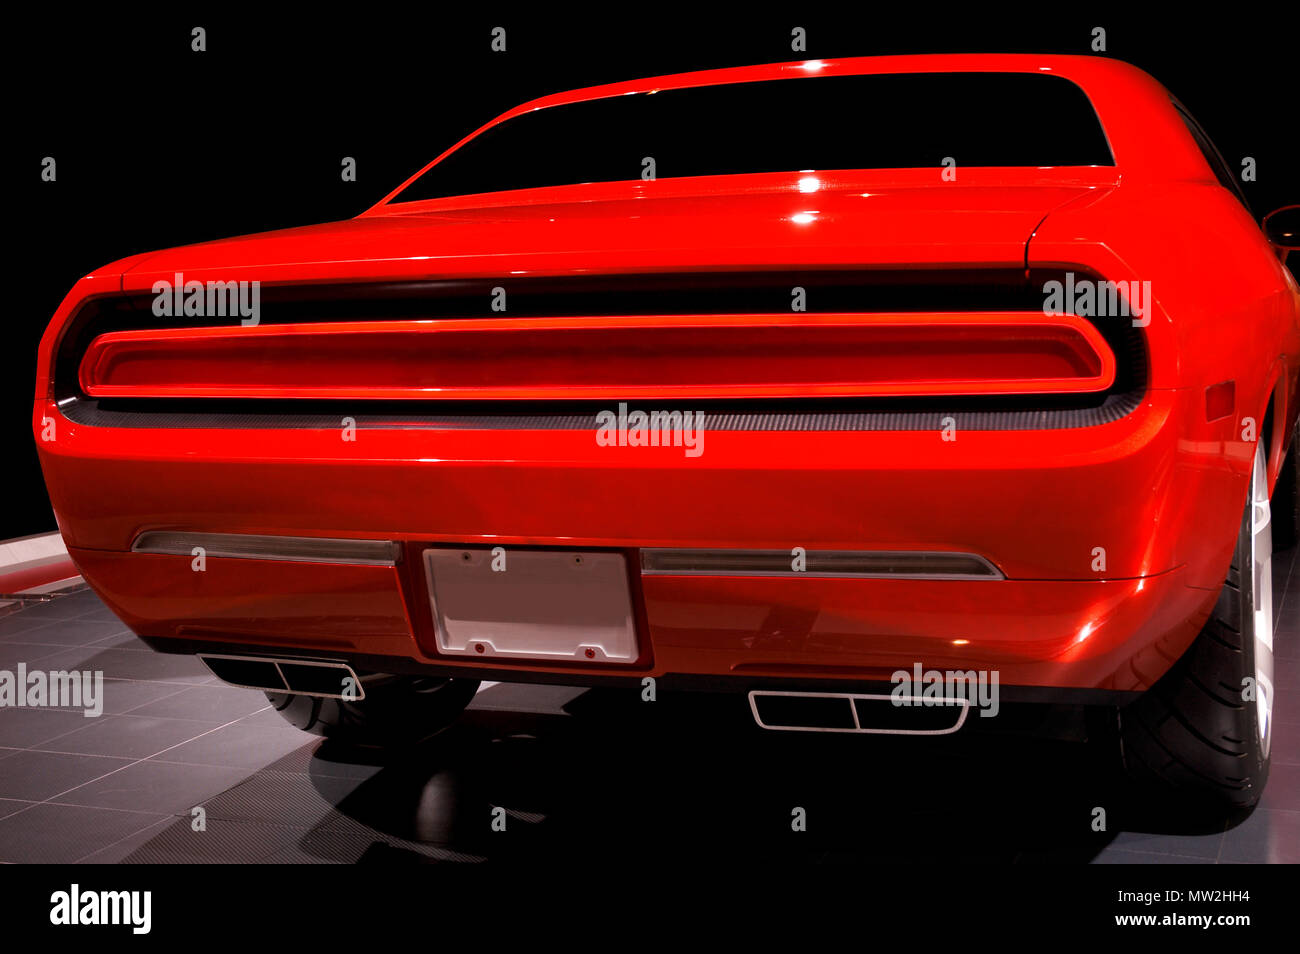 https://c8.alamy.com/compde/mw2hh4/ein-hinteres-rucklicht-montage-einer-neuen-concept-car-das-erstmals-auf-der-auto-show-in-detroit-mehr-fotos-in-meiner-galerie-zur-verfugung-mw2hh4.jpg